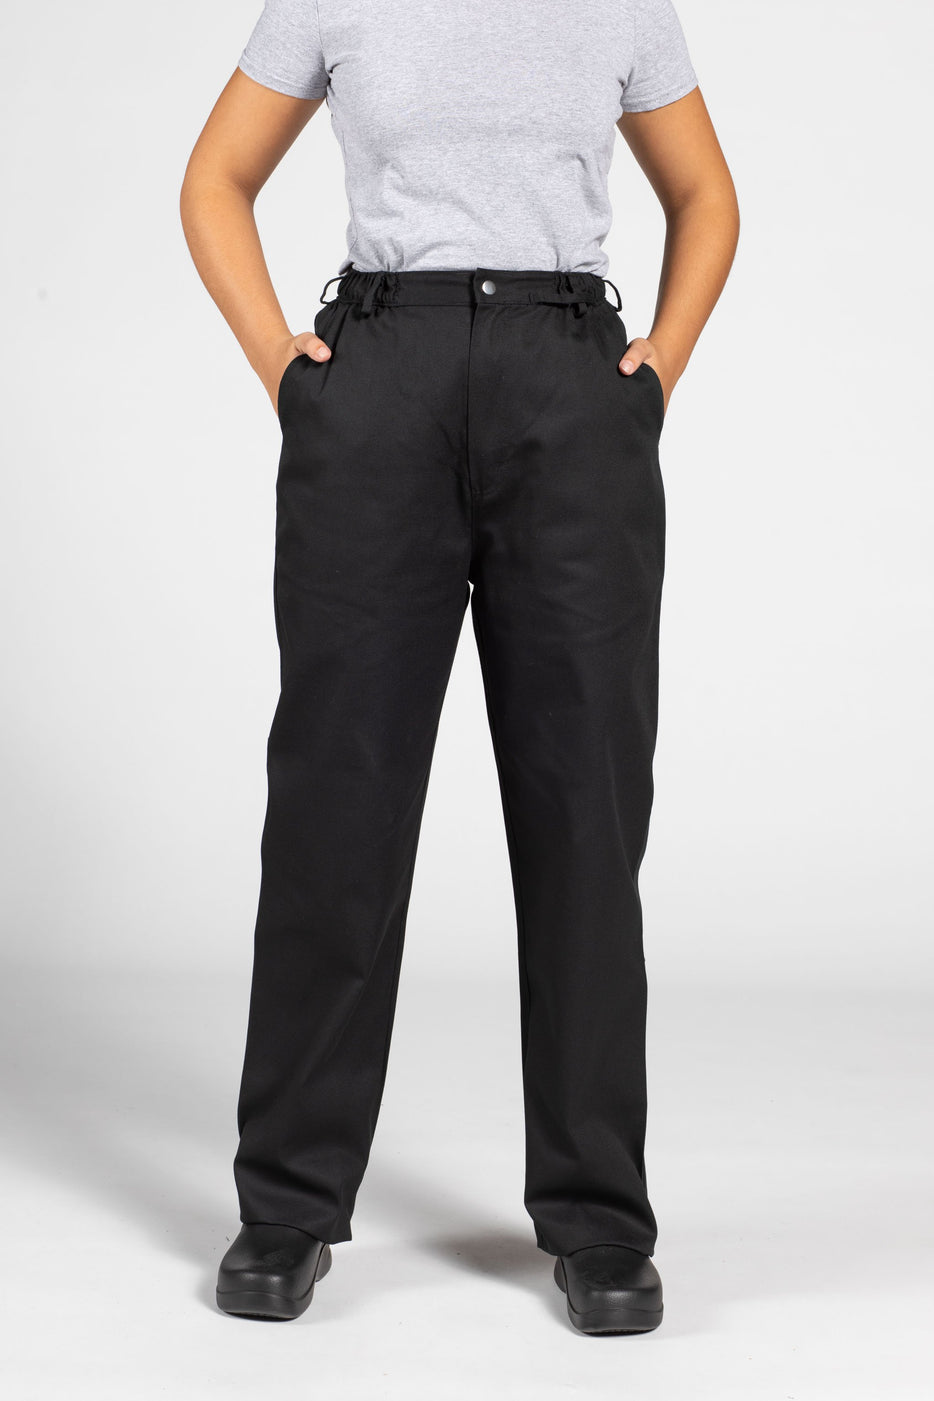 Buy/Shop Men Chef Pants Online in CO – AAA Uniforms